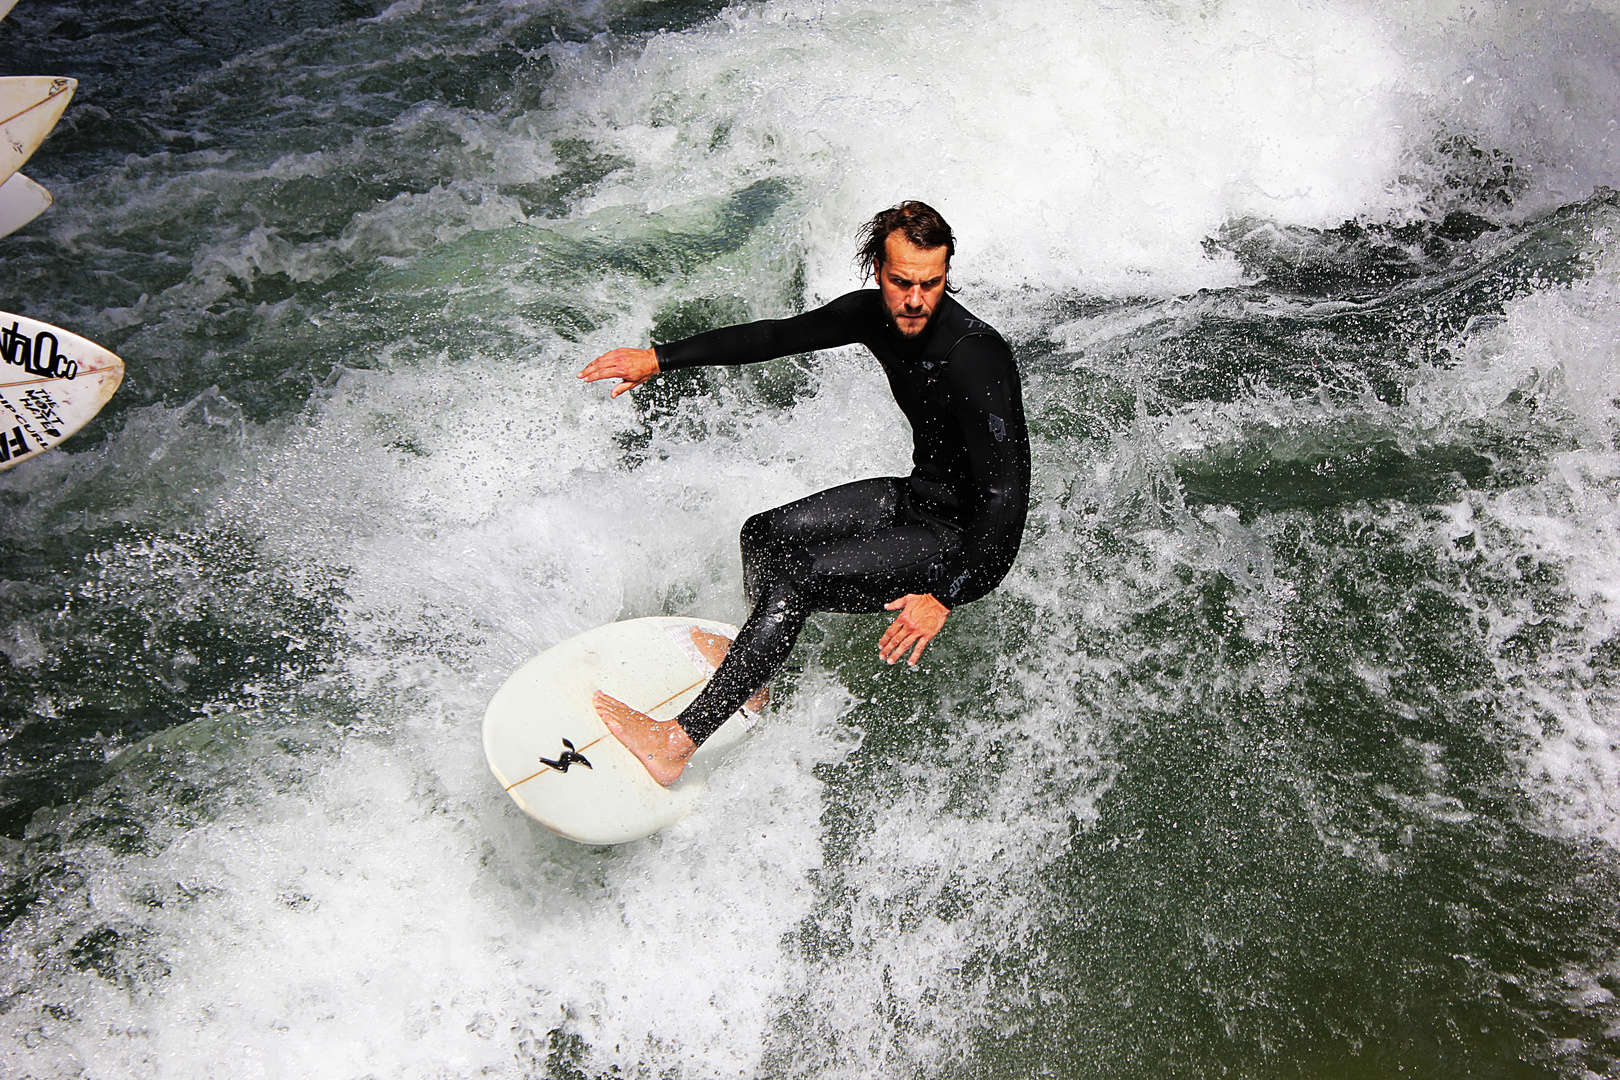 Surfer @ Eisbach